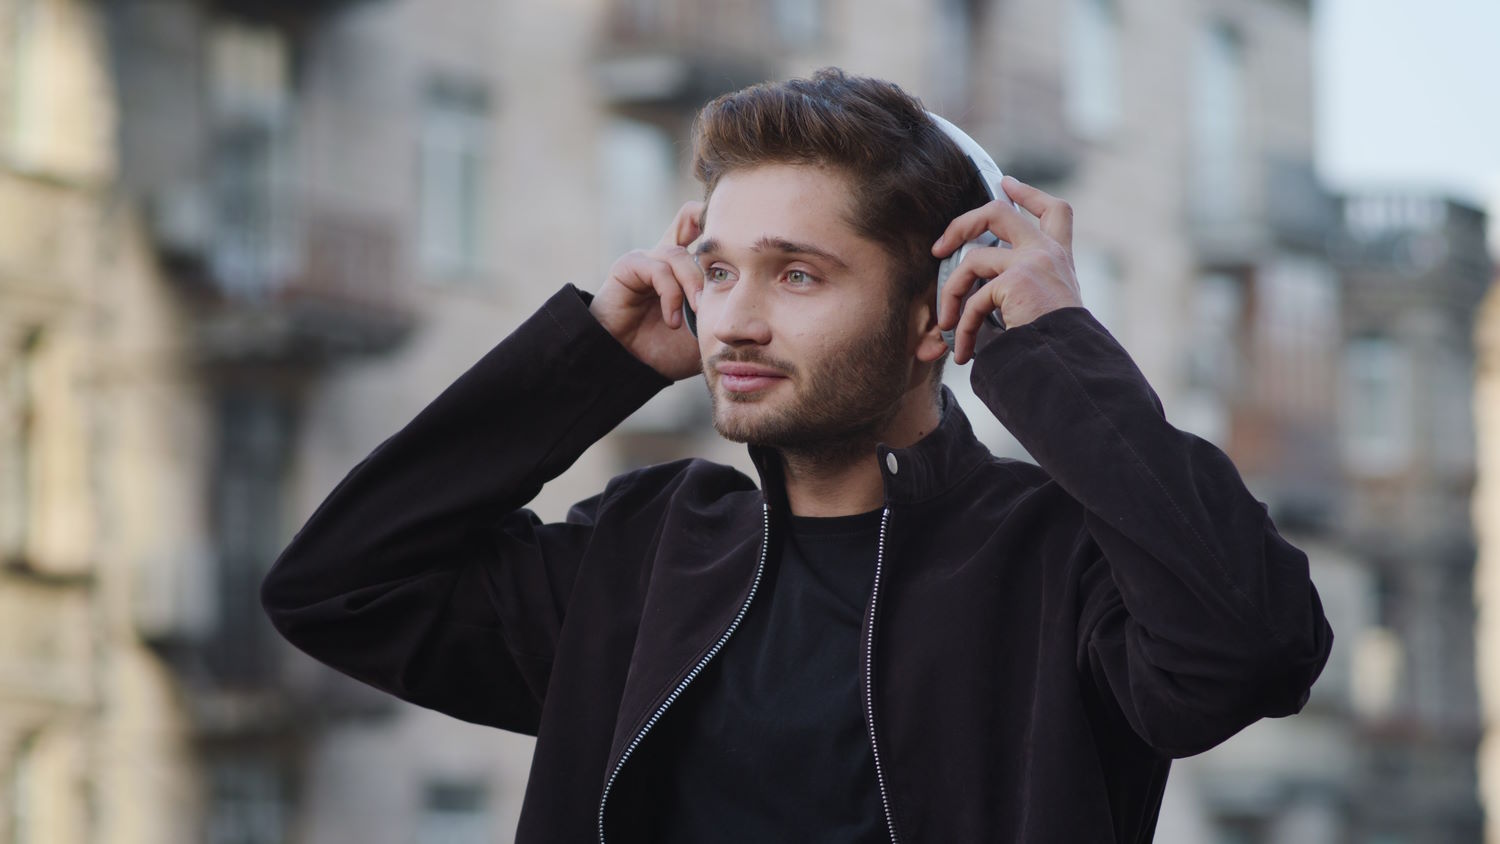 Hombre se pone unos auriculares en la calle